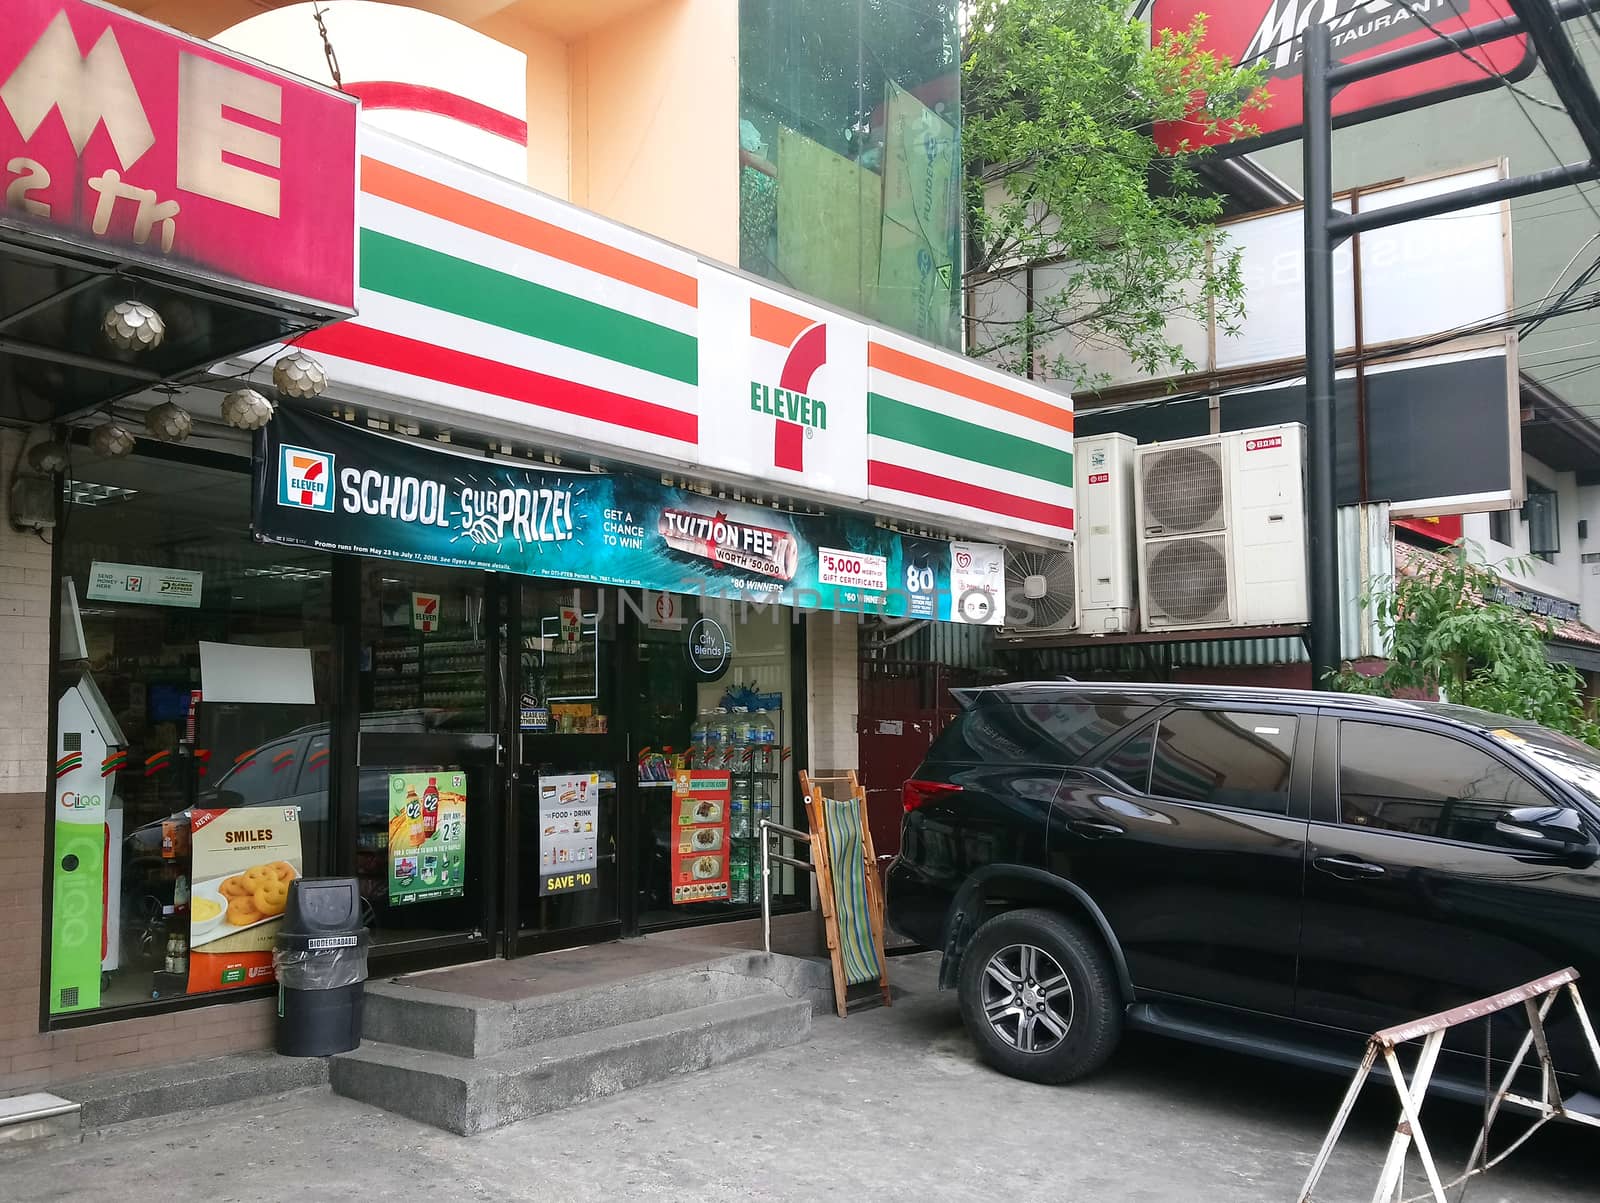 MANILA, PH - JUNE 4 - 7 Eleven convenience store facade on June 4, 2018 in Manila, Philippines.